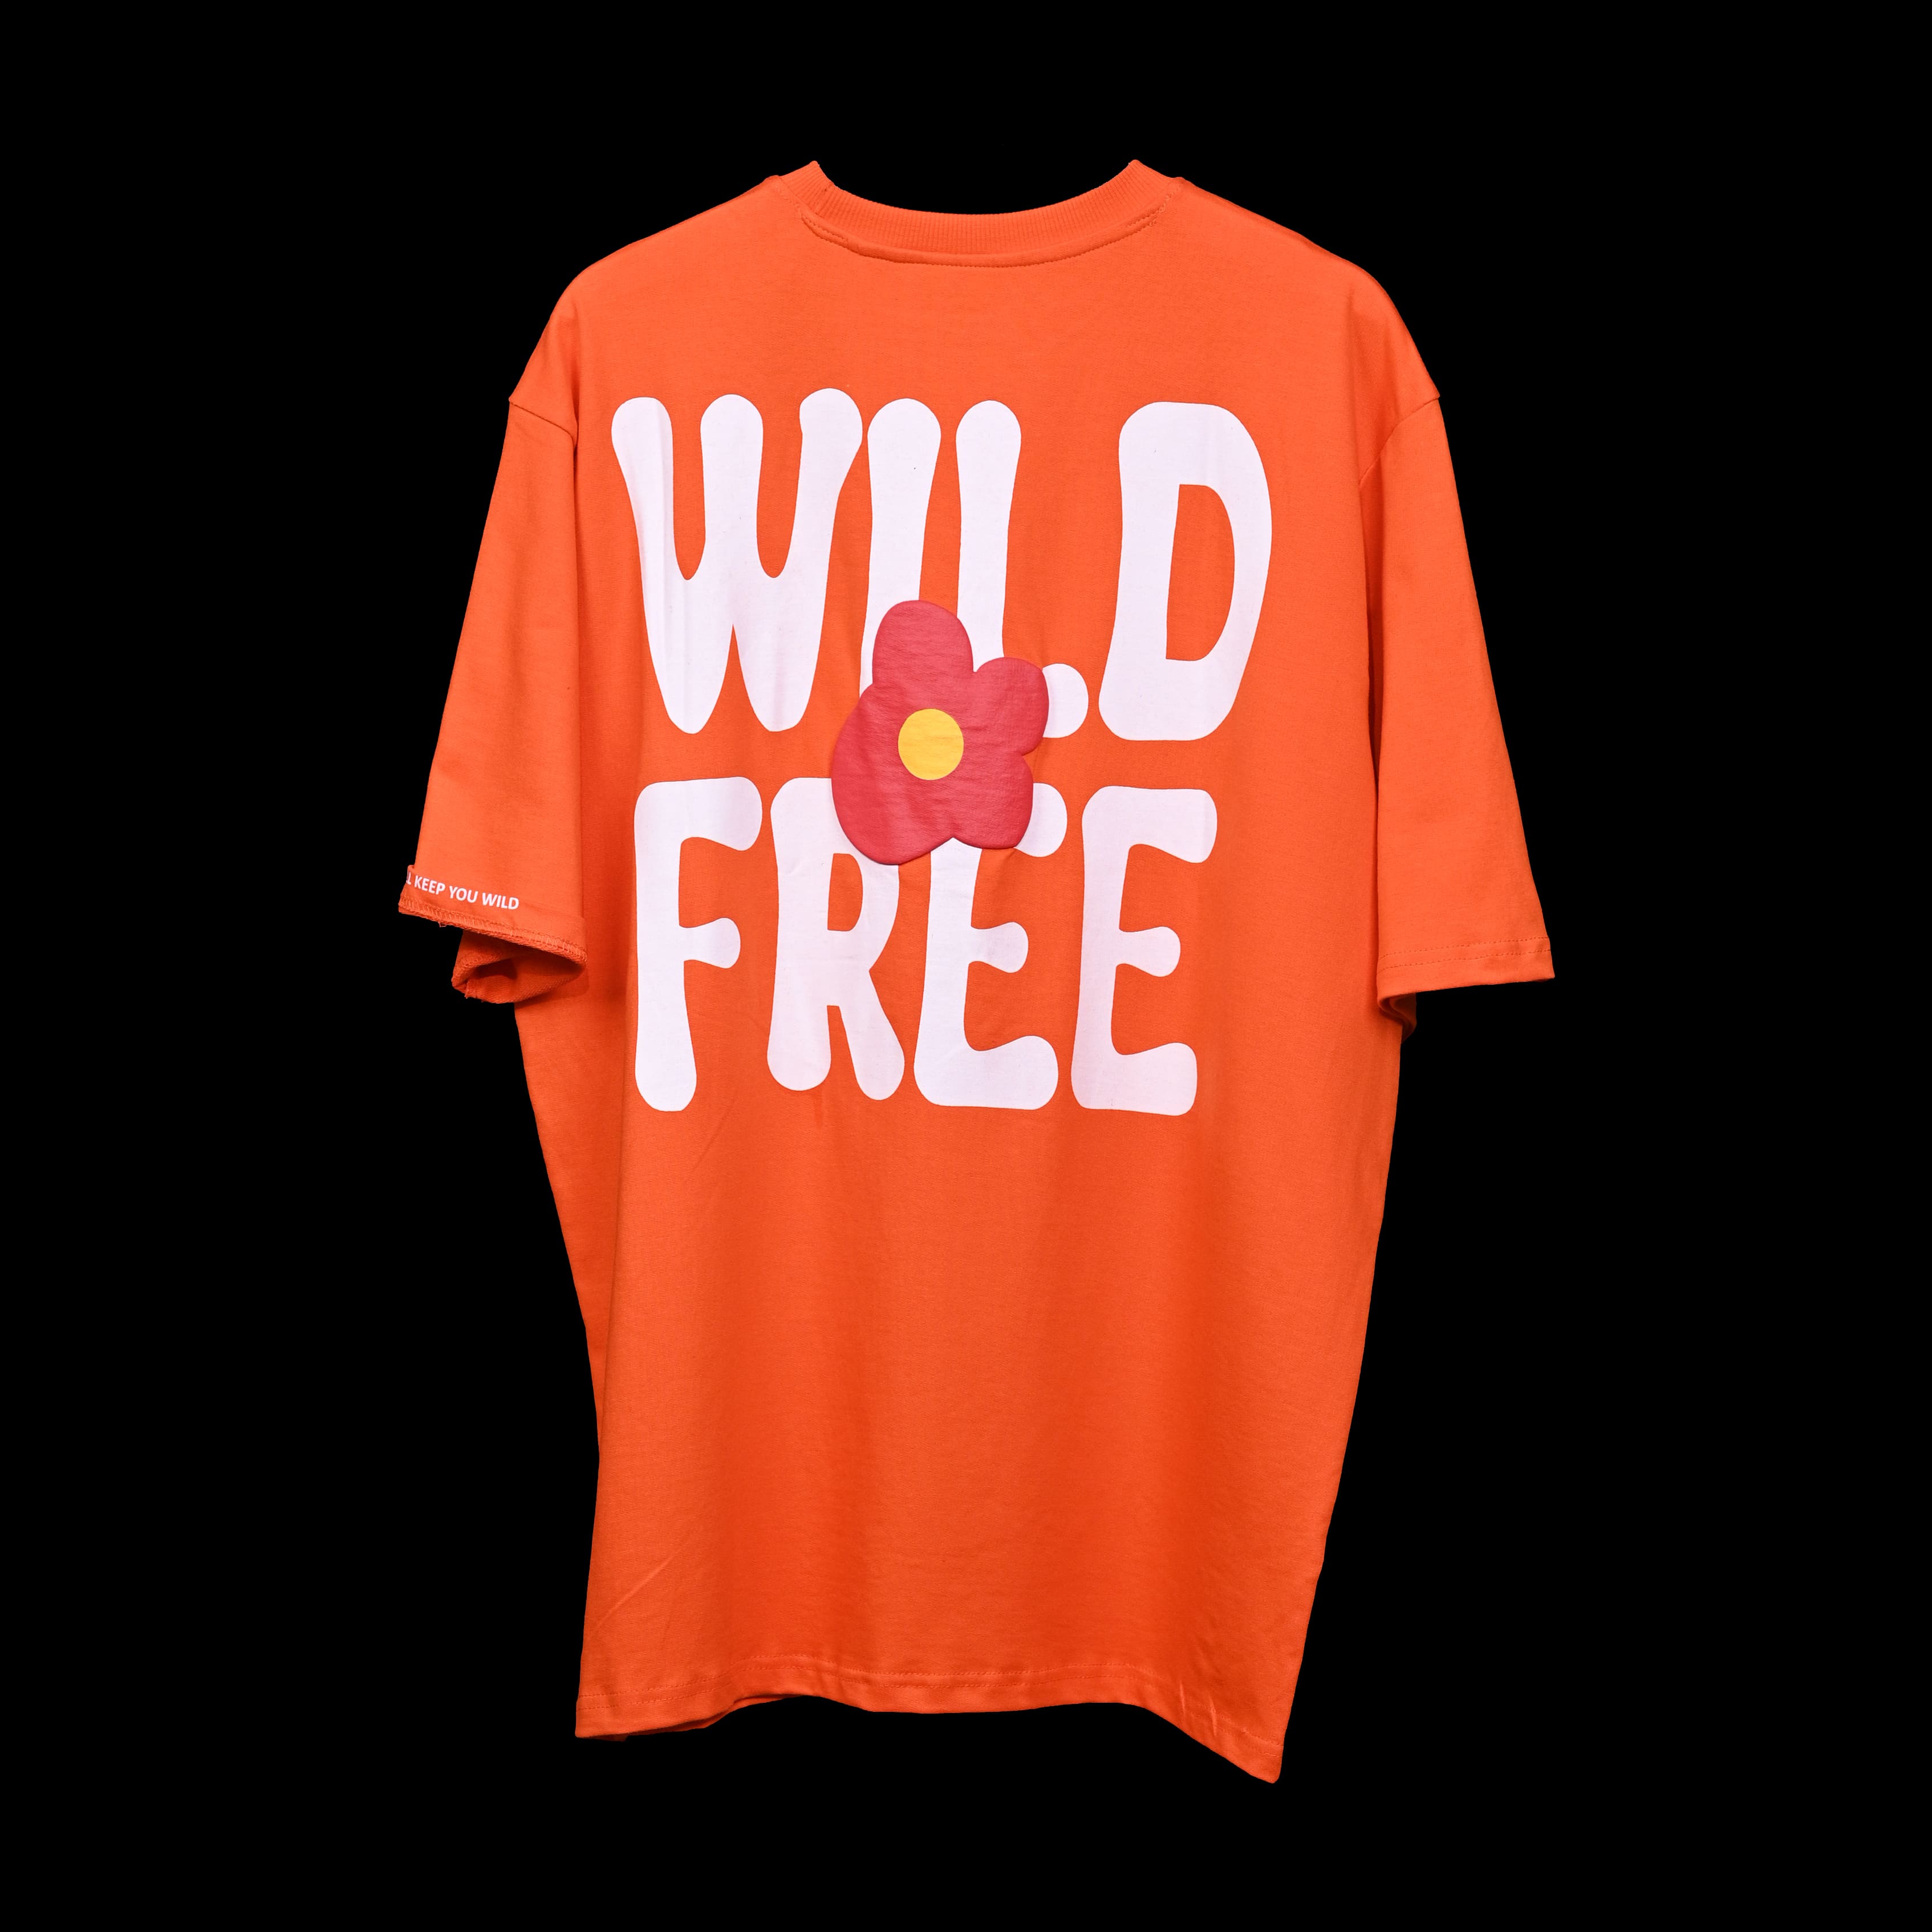 Wild Free